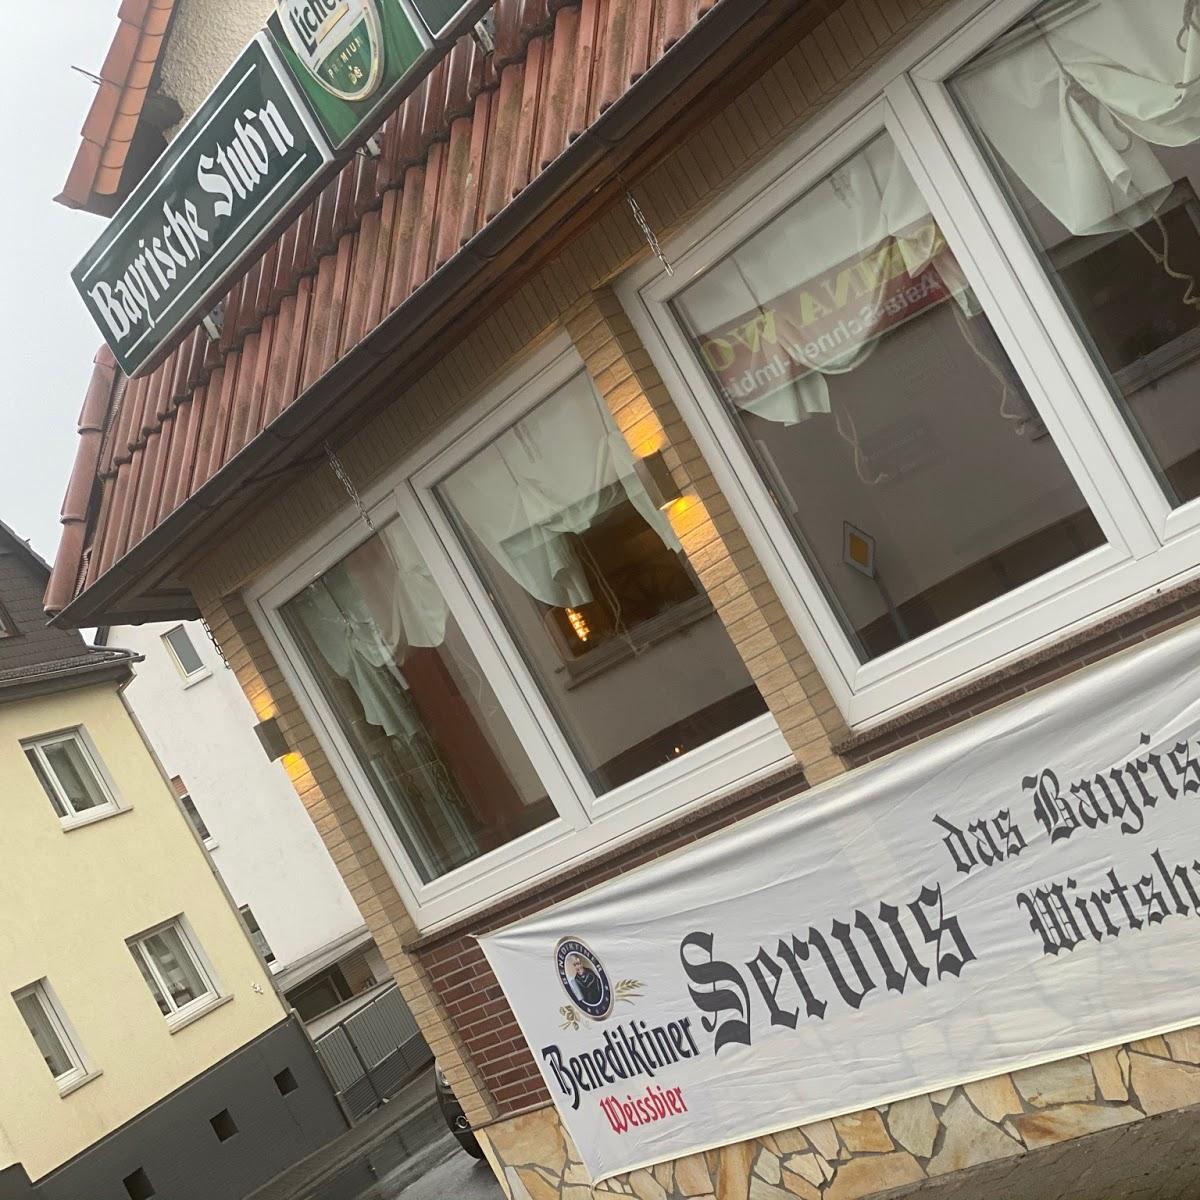 Restaurant "Bayrische Stub